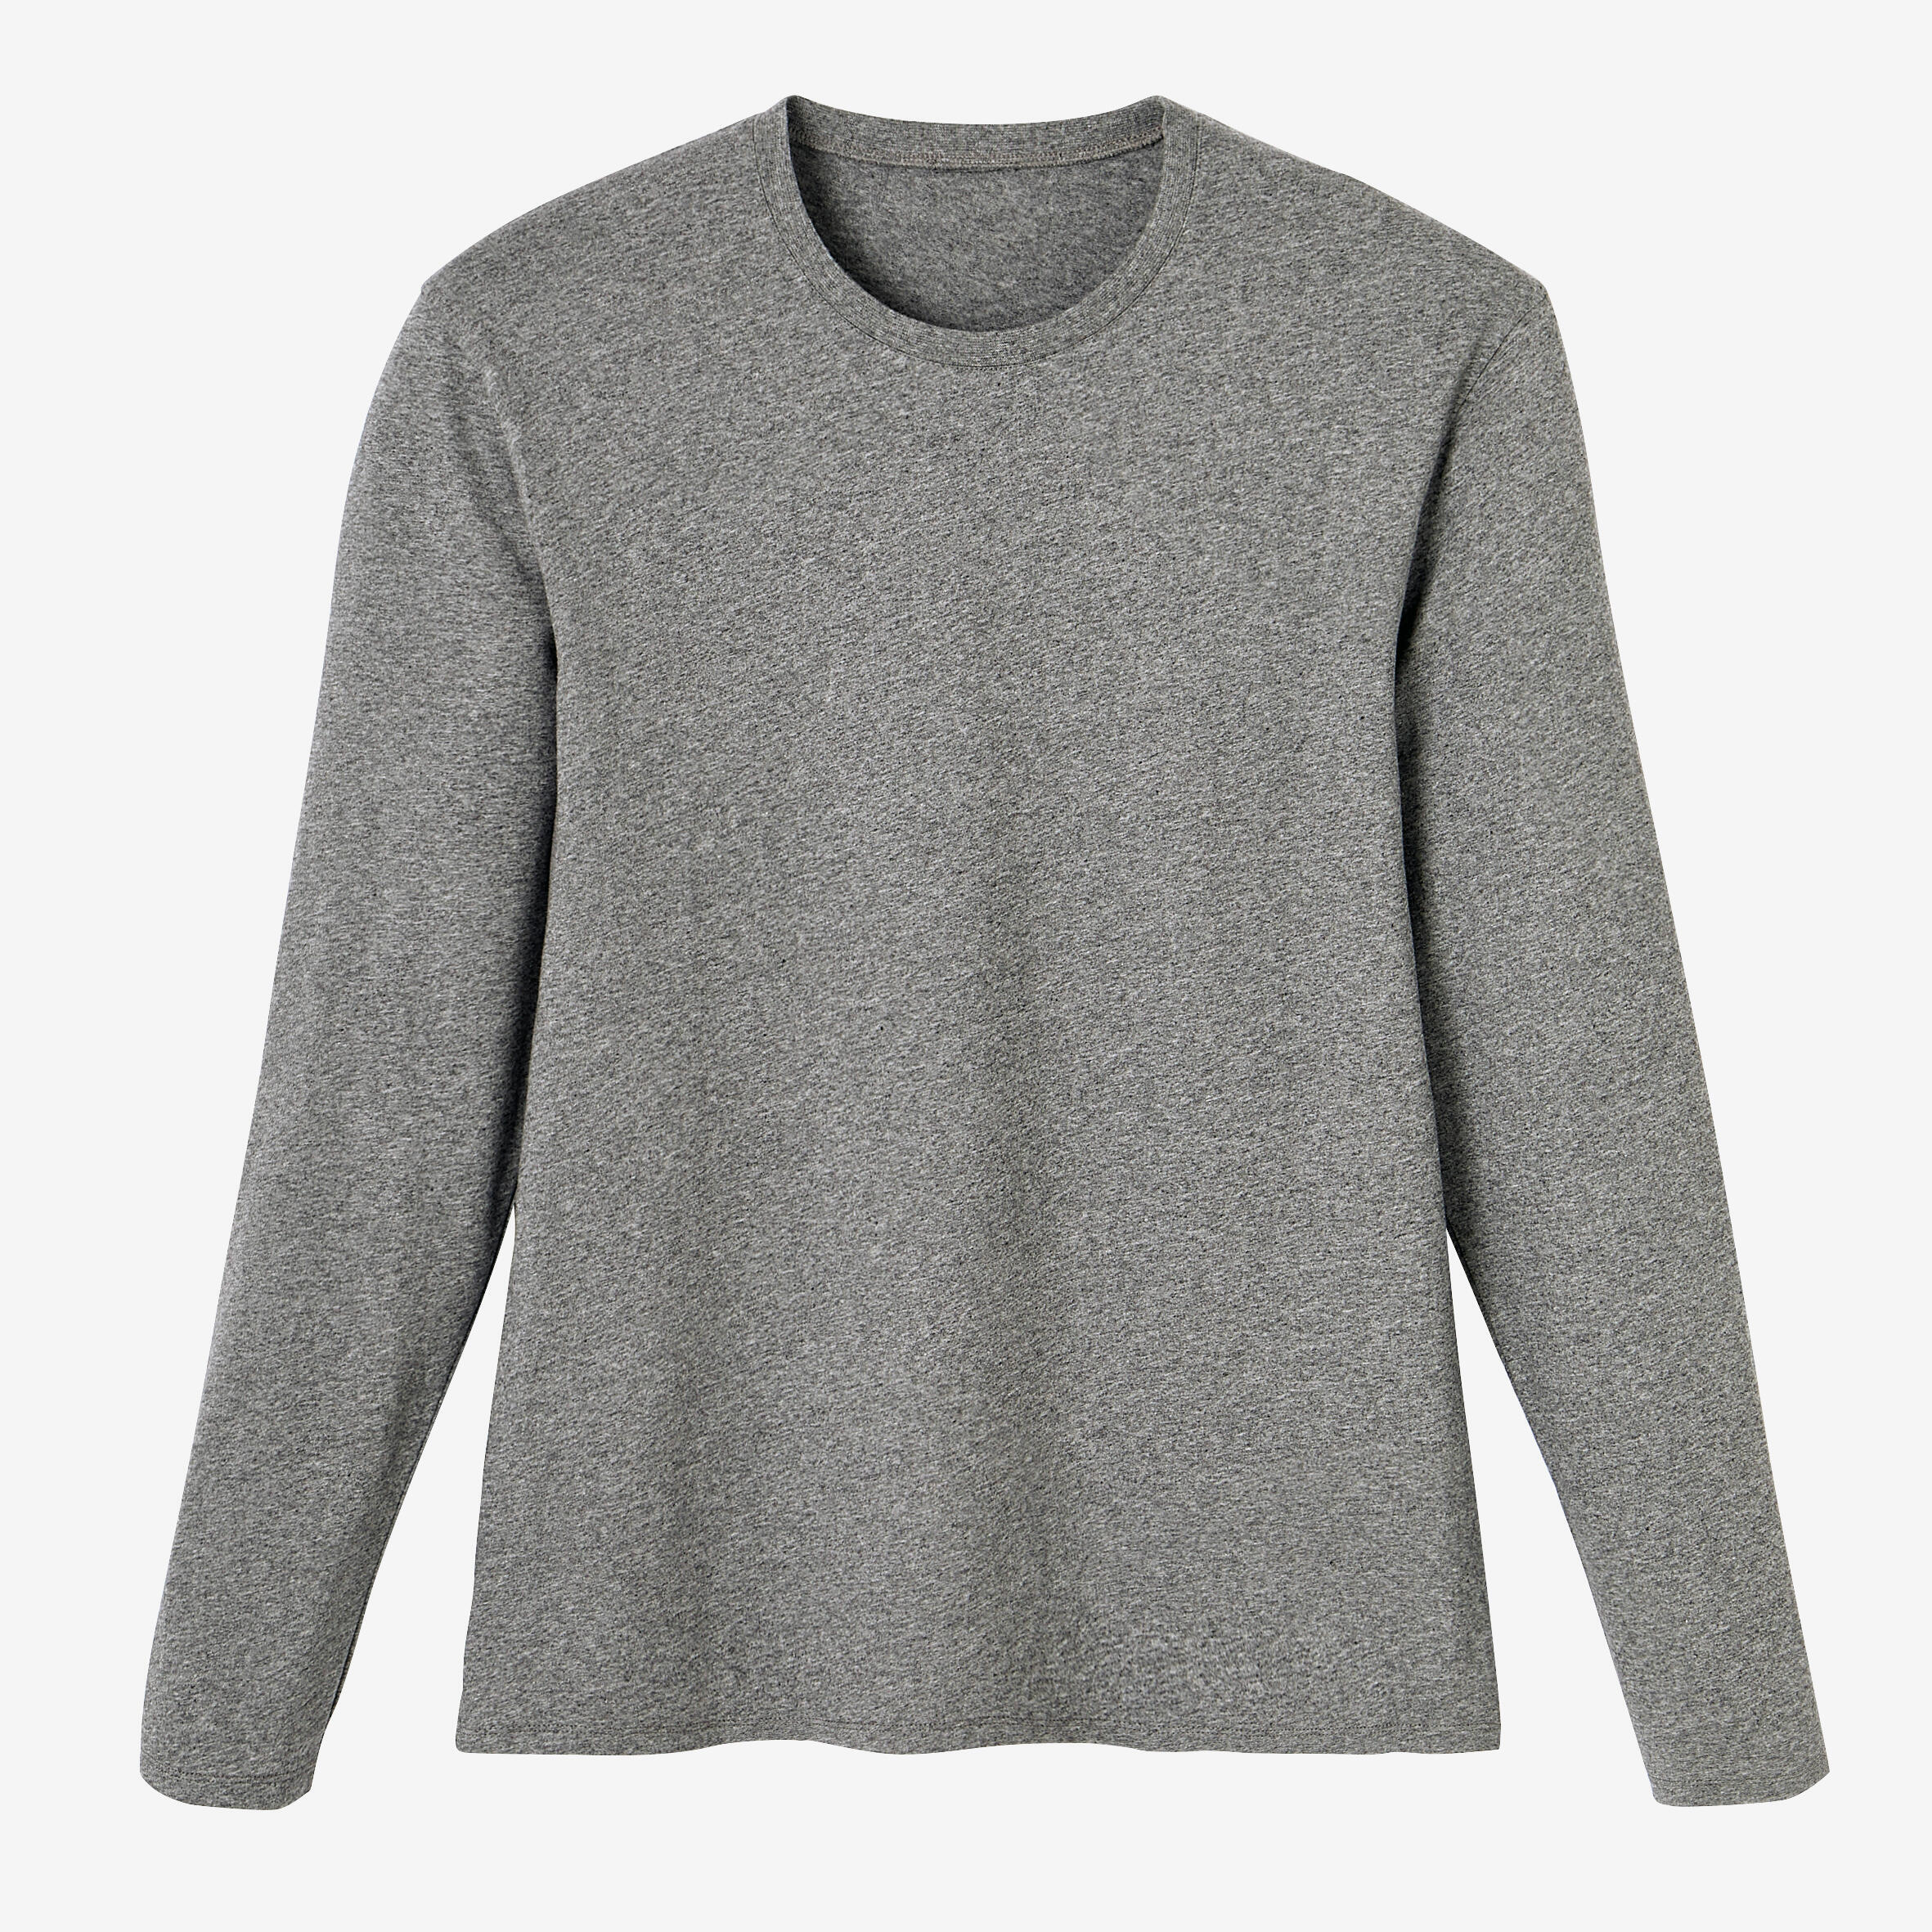 Men's Long-Sleeved Fitness T-Shirt 100 - Grey 5/5